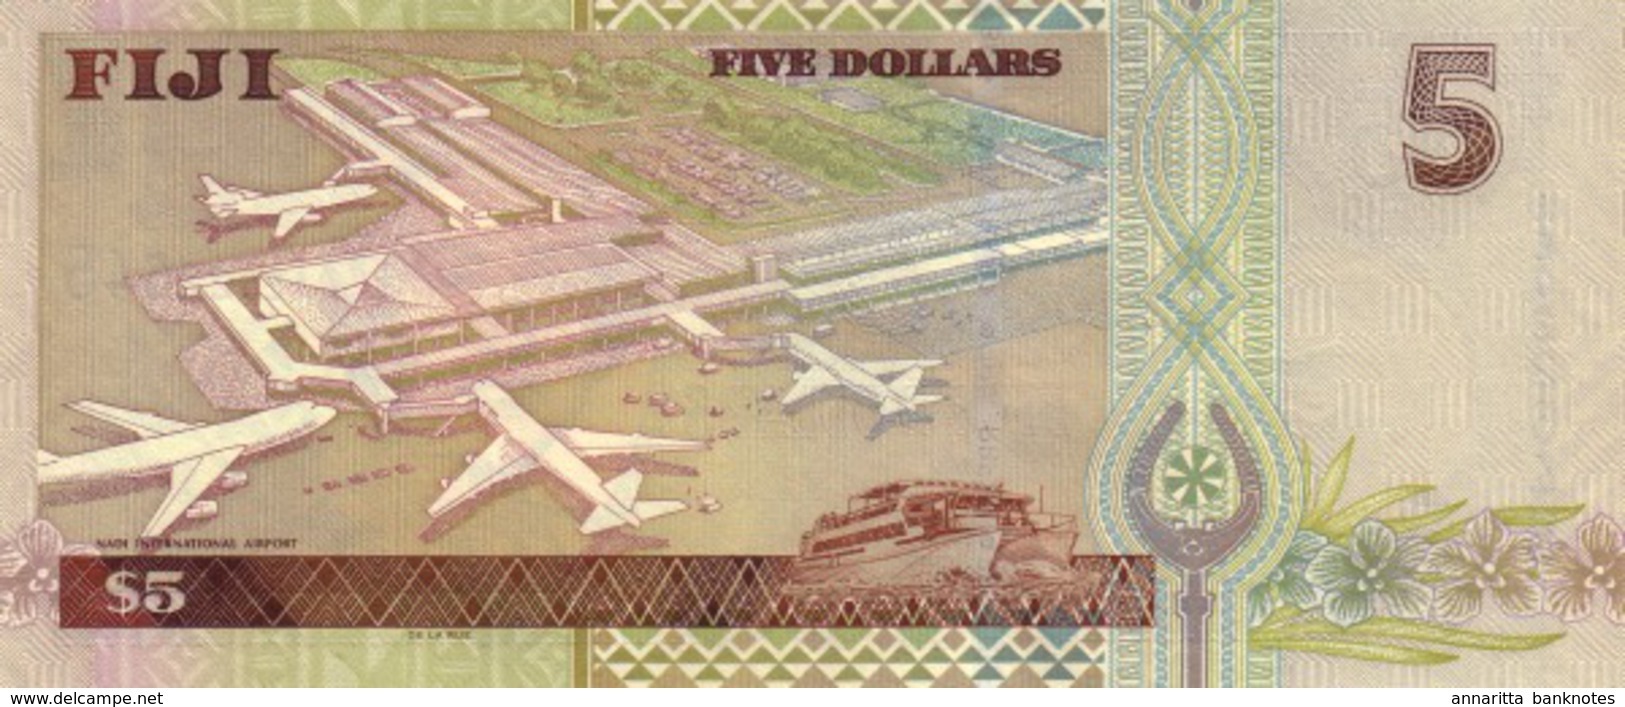 FIJI 5 DOLLARS ND (2002) P-105 UNC  [FJ516a] - Fiji